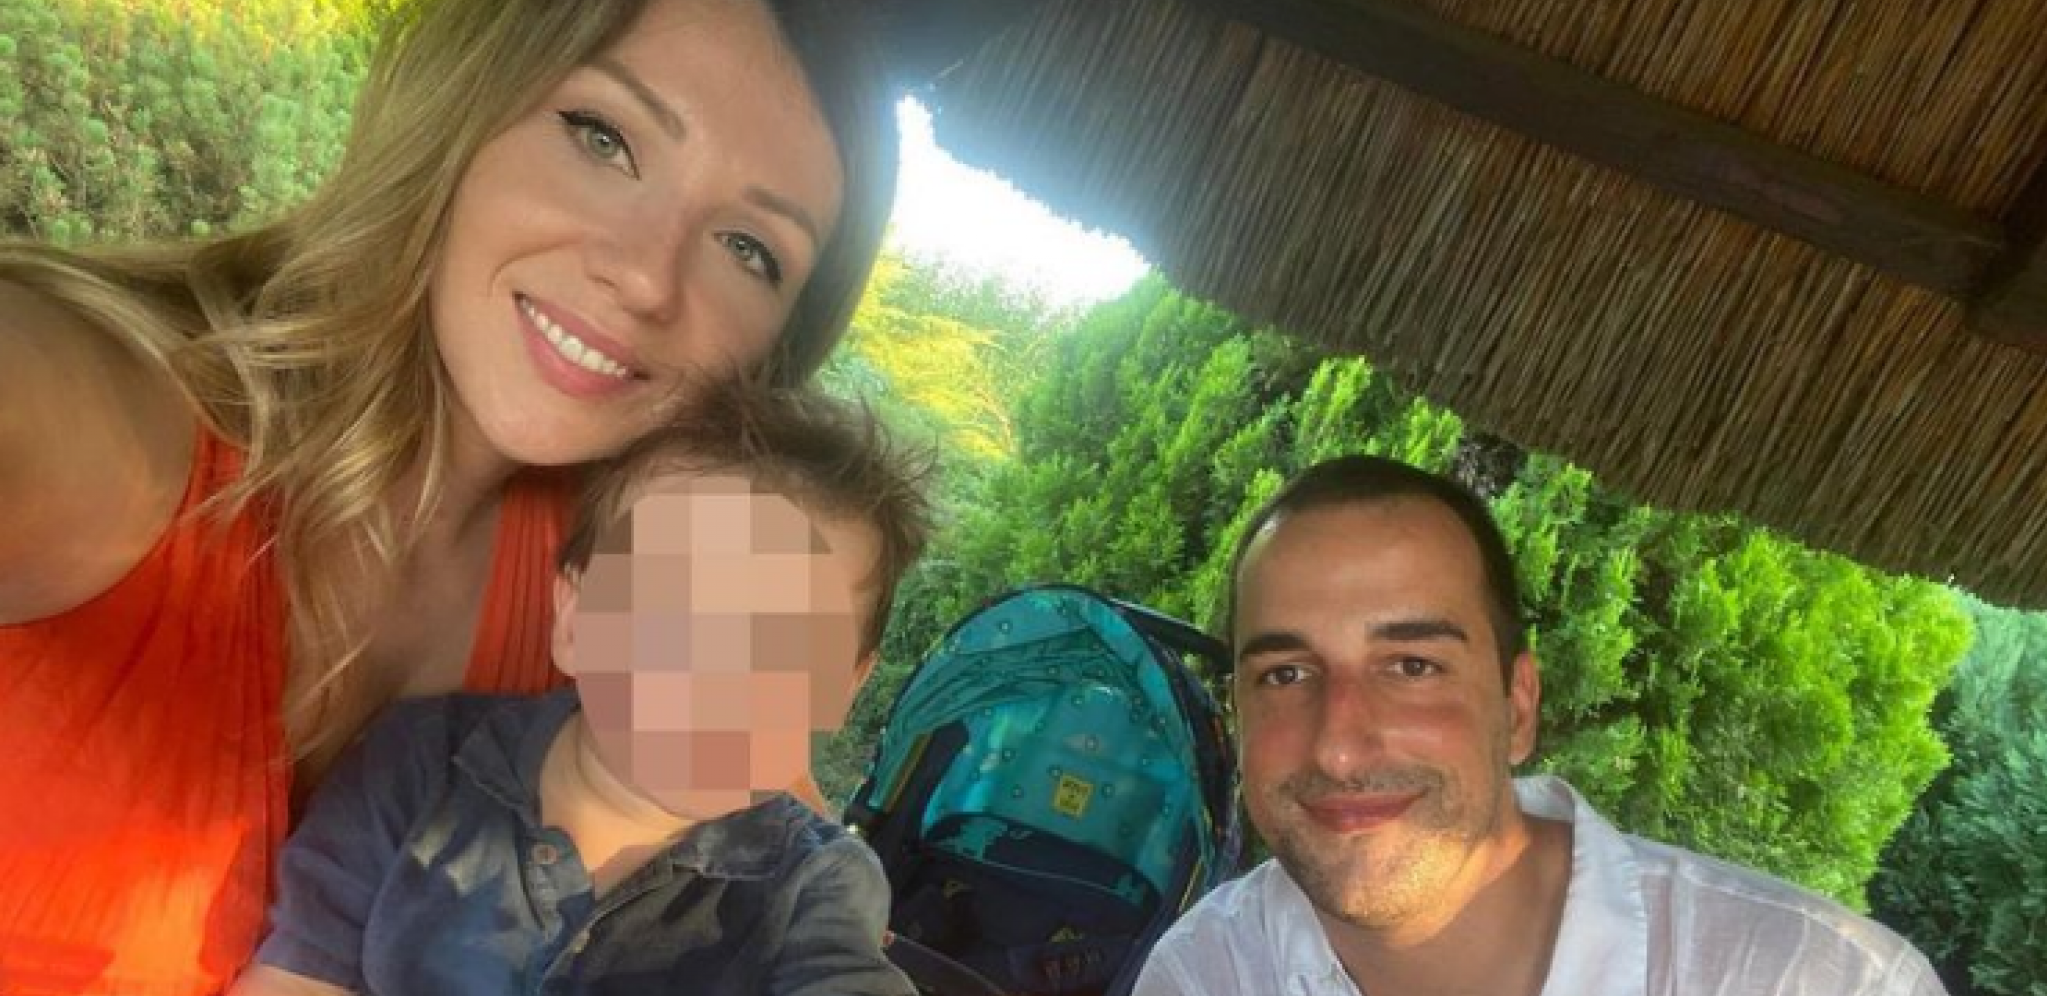 UHAPŠENA DVOJICA POMAGAČA OCA KOJI JE ODVEO DETE U ŠVAJCARSKU Ovako je Mašan izveo sina iz Srbije bez saglasnosti majke